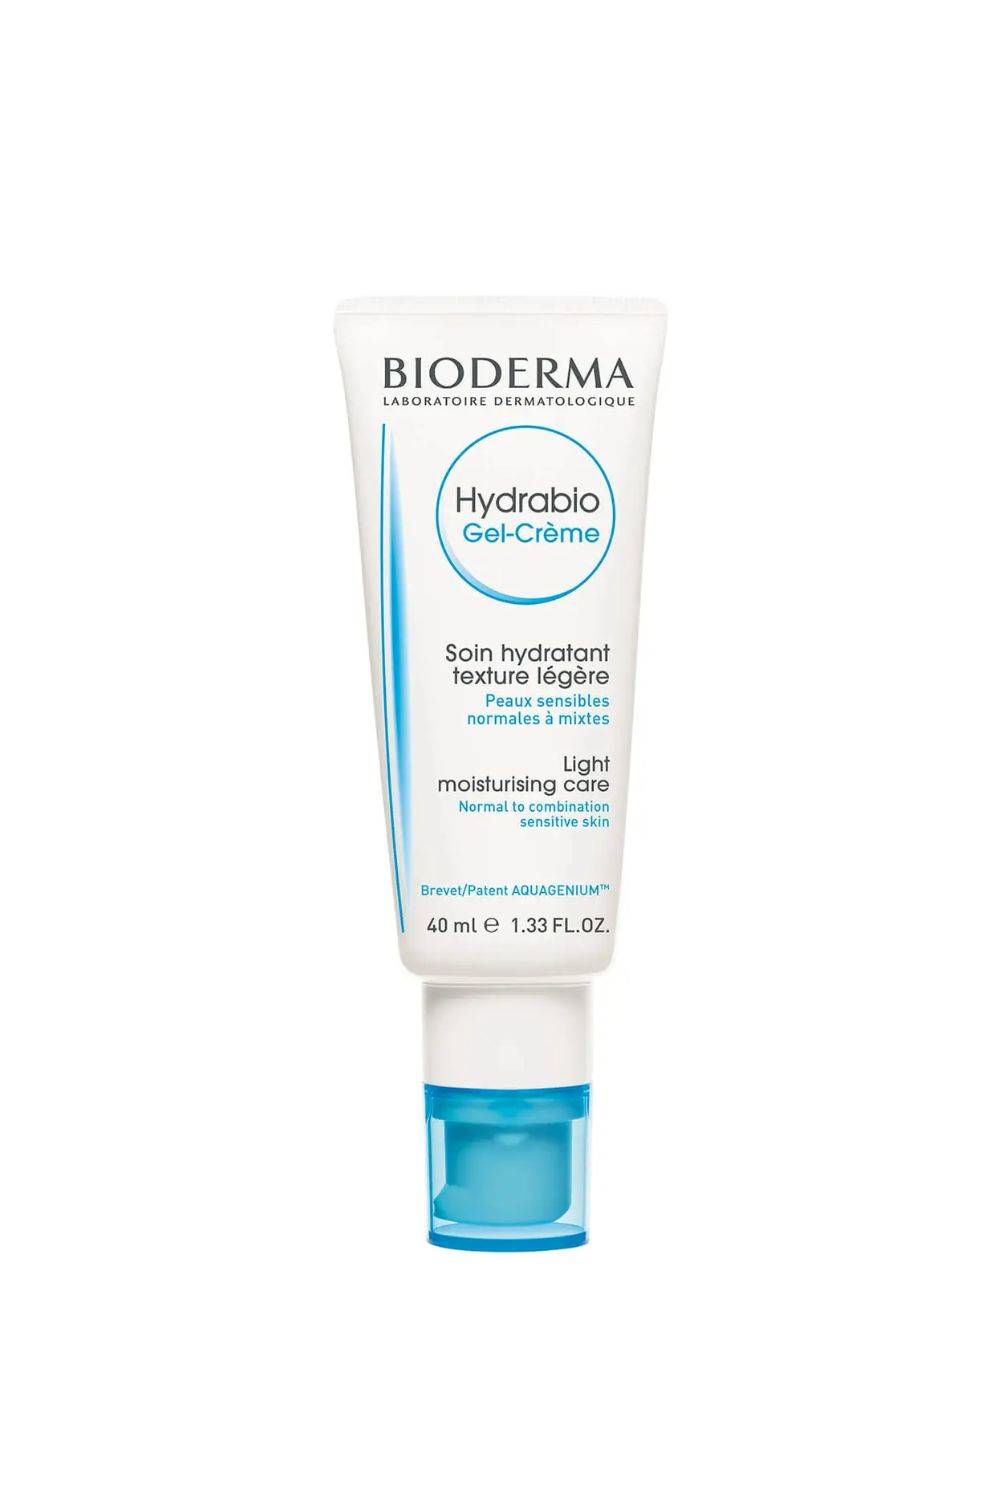 Bioderma Hydrabio Gel-Creme Crema hidratante suave Piel sensible deshidratada